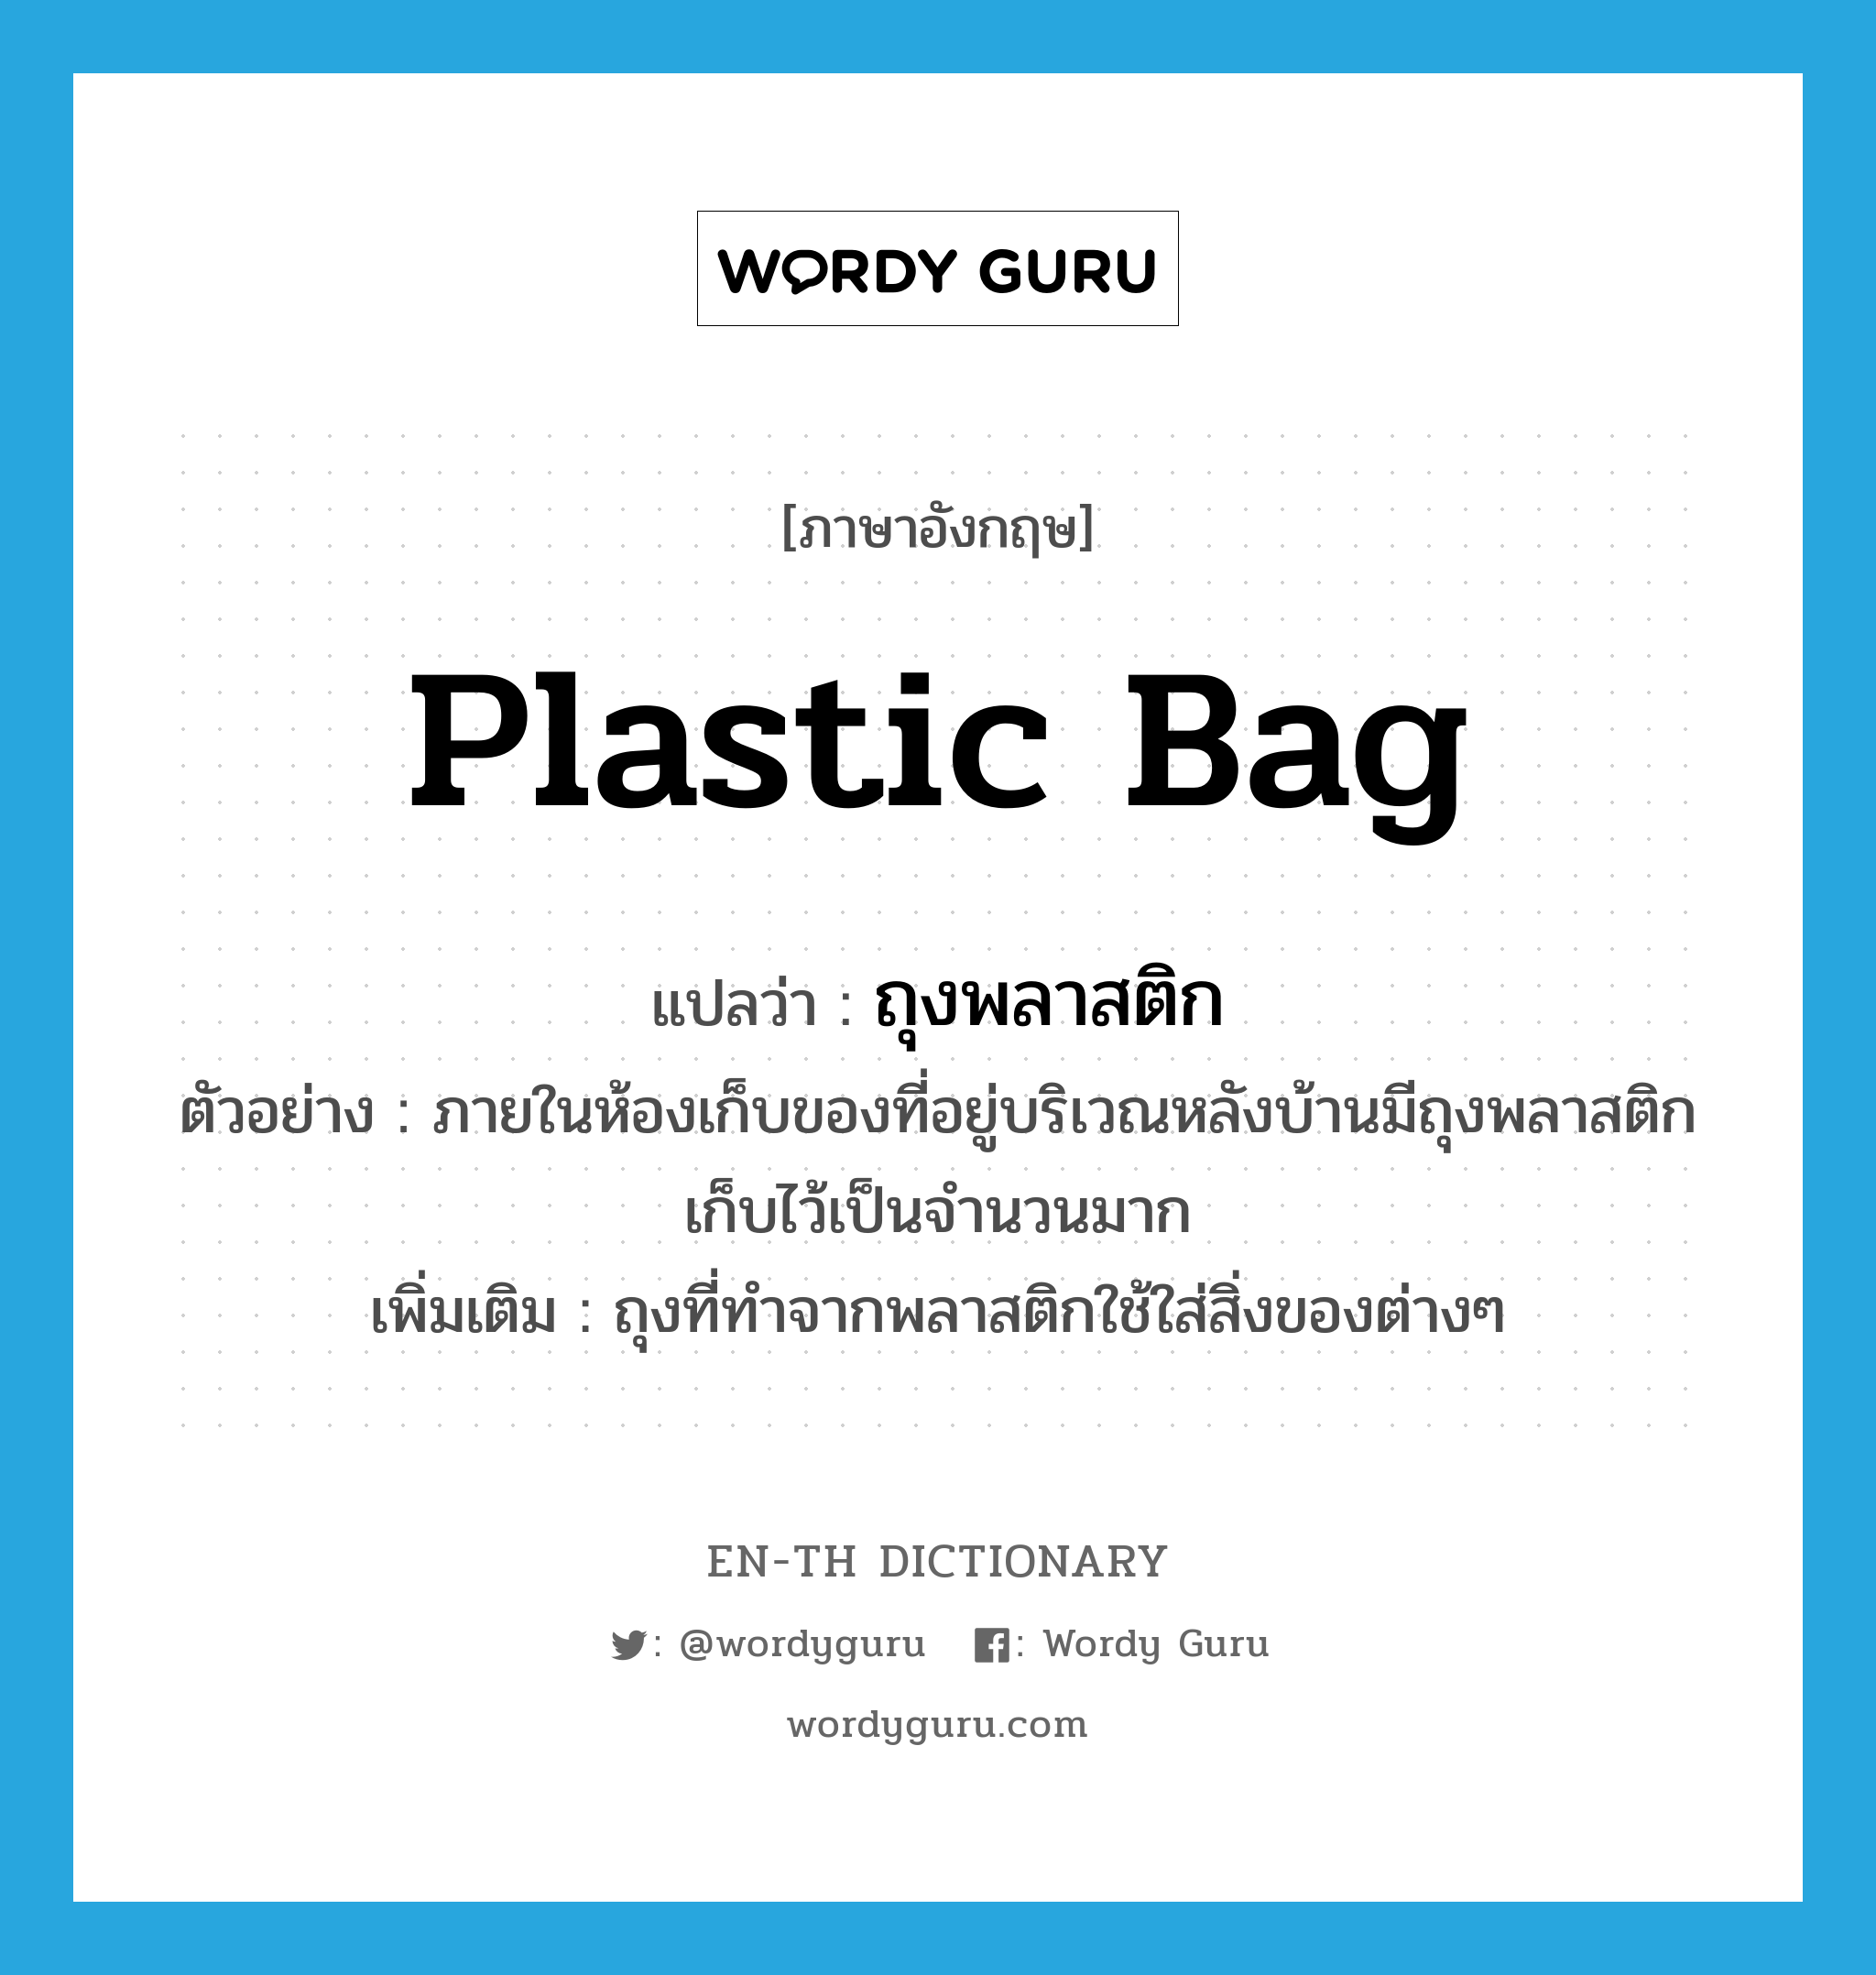 ถุงพลาสติก ภาษาอังกฤษ?, คำศัพท์ภาษาอังกฤษ ถุงพลาสติก แปลว่า plastic bag ประเภท N ตัวอย่าง ภายในห้องเก็บของที่อยู่บริเวณหลังบ้านมีถุงพลาสติกเก็บไว้เป็นจำนวนมาก เพิ่มเติม ถุงที่ทำจากพลาสติกใช้ใส่สิ่งของต่างๆ หมวด N